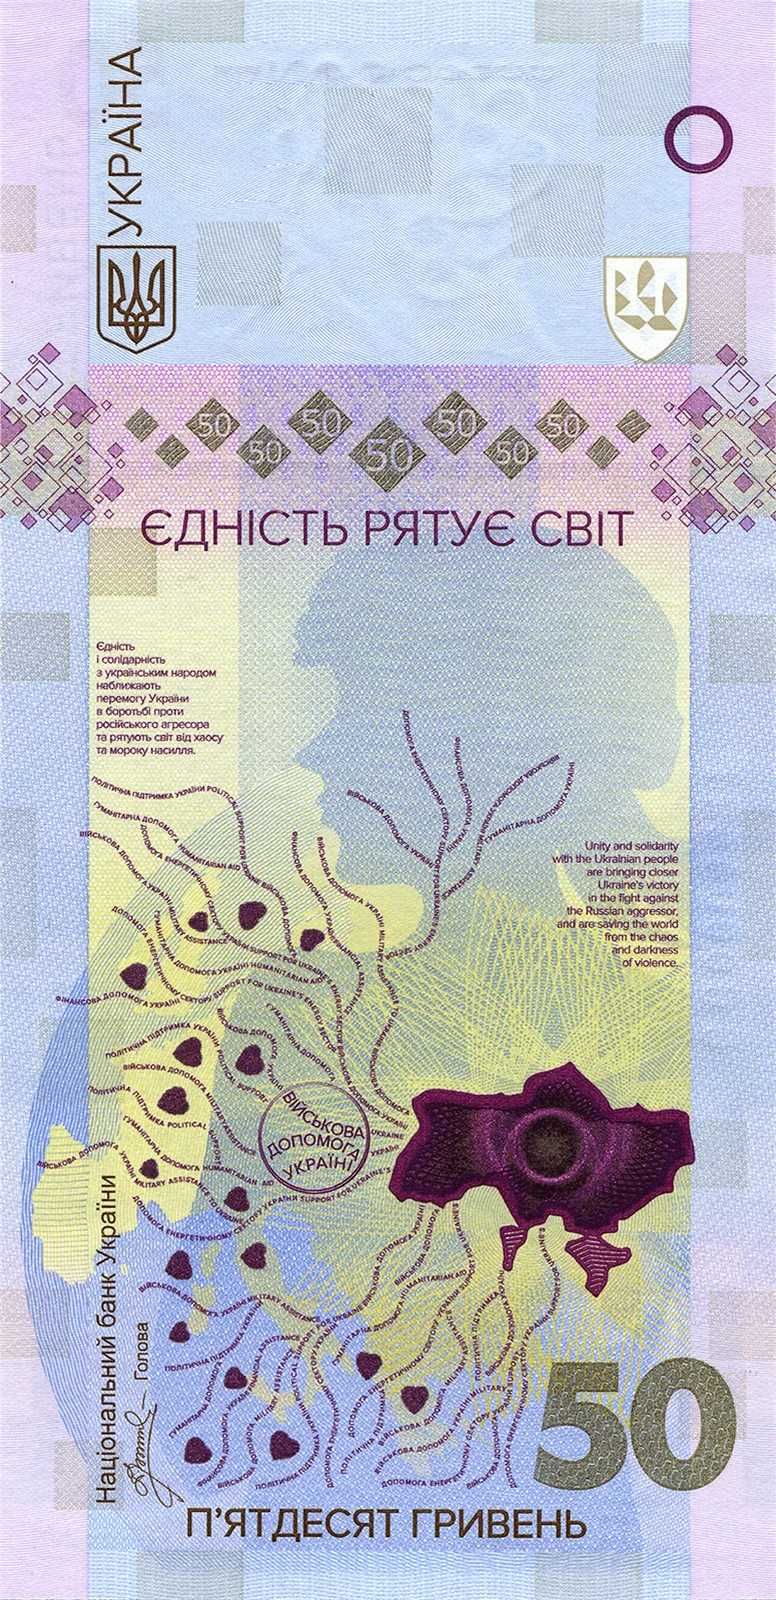 Пам'ятна банкнота "Єдність рятує світ" у сув. пак. (кількість)